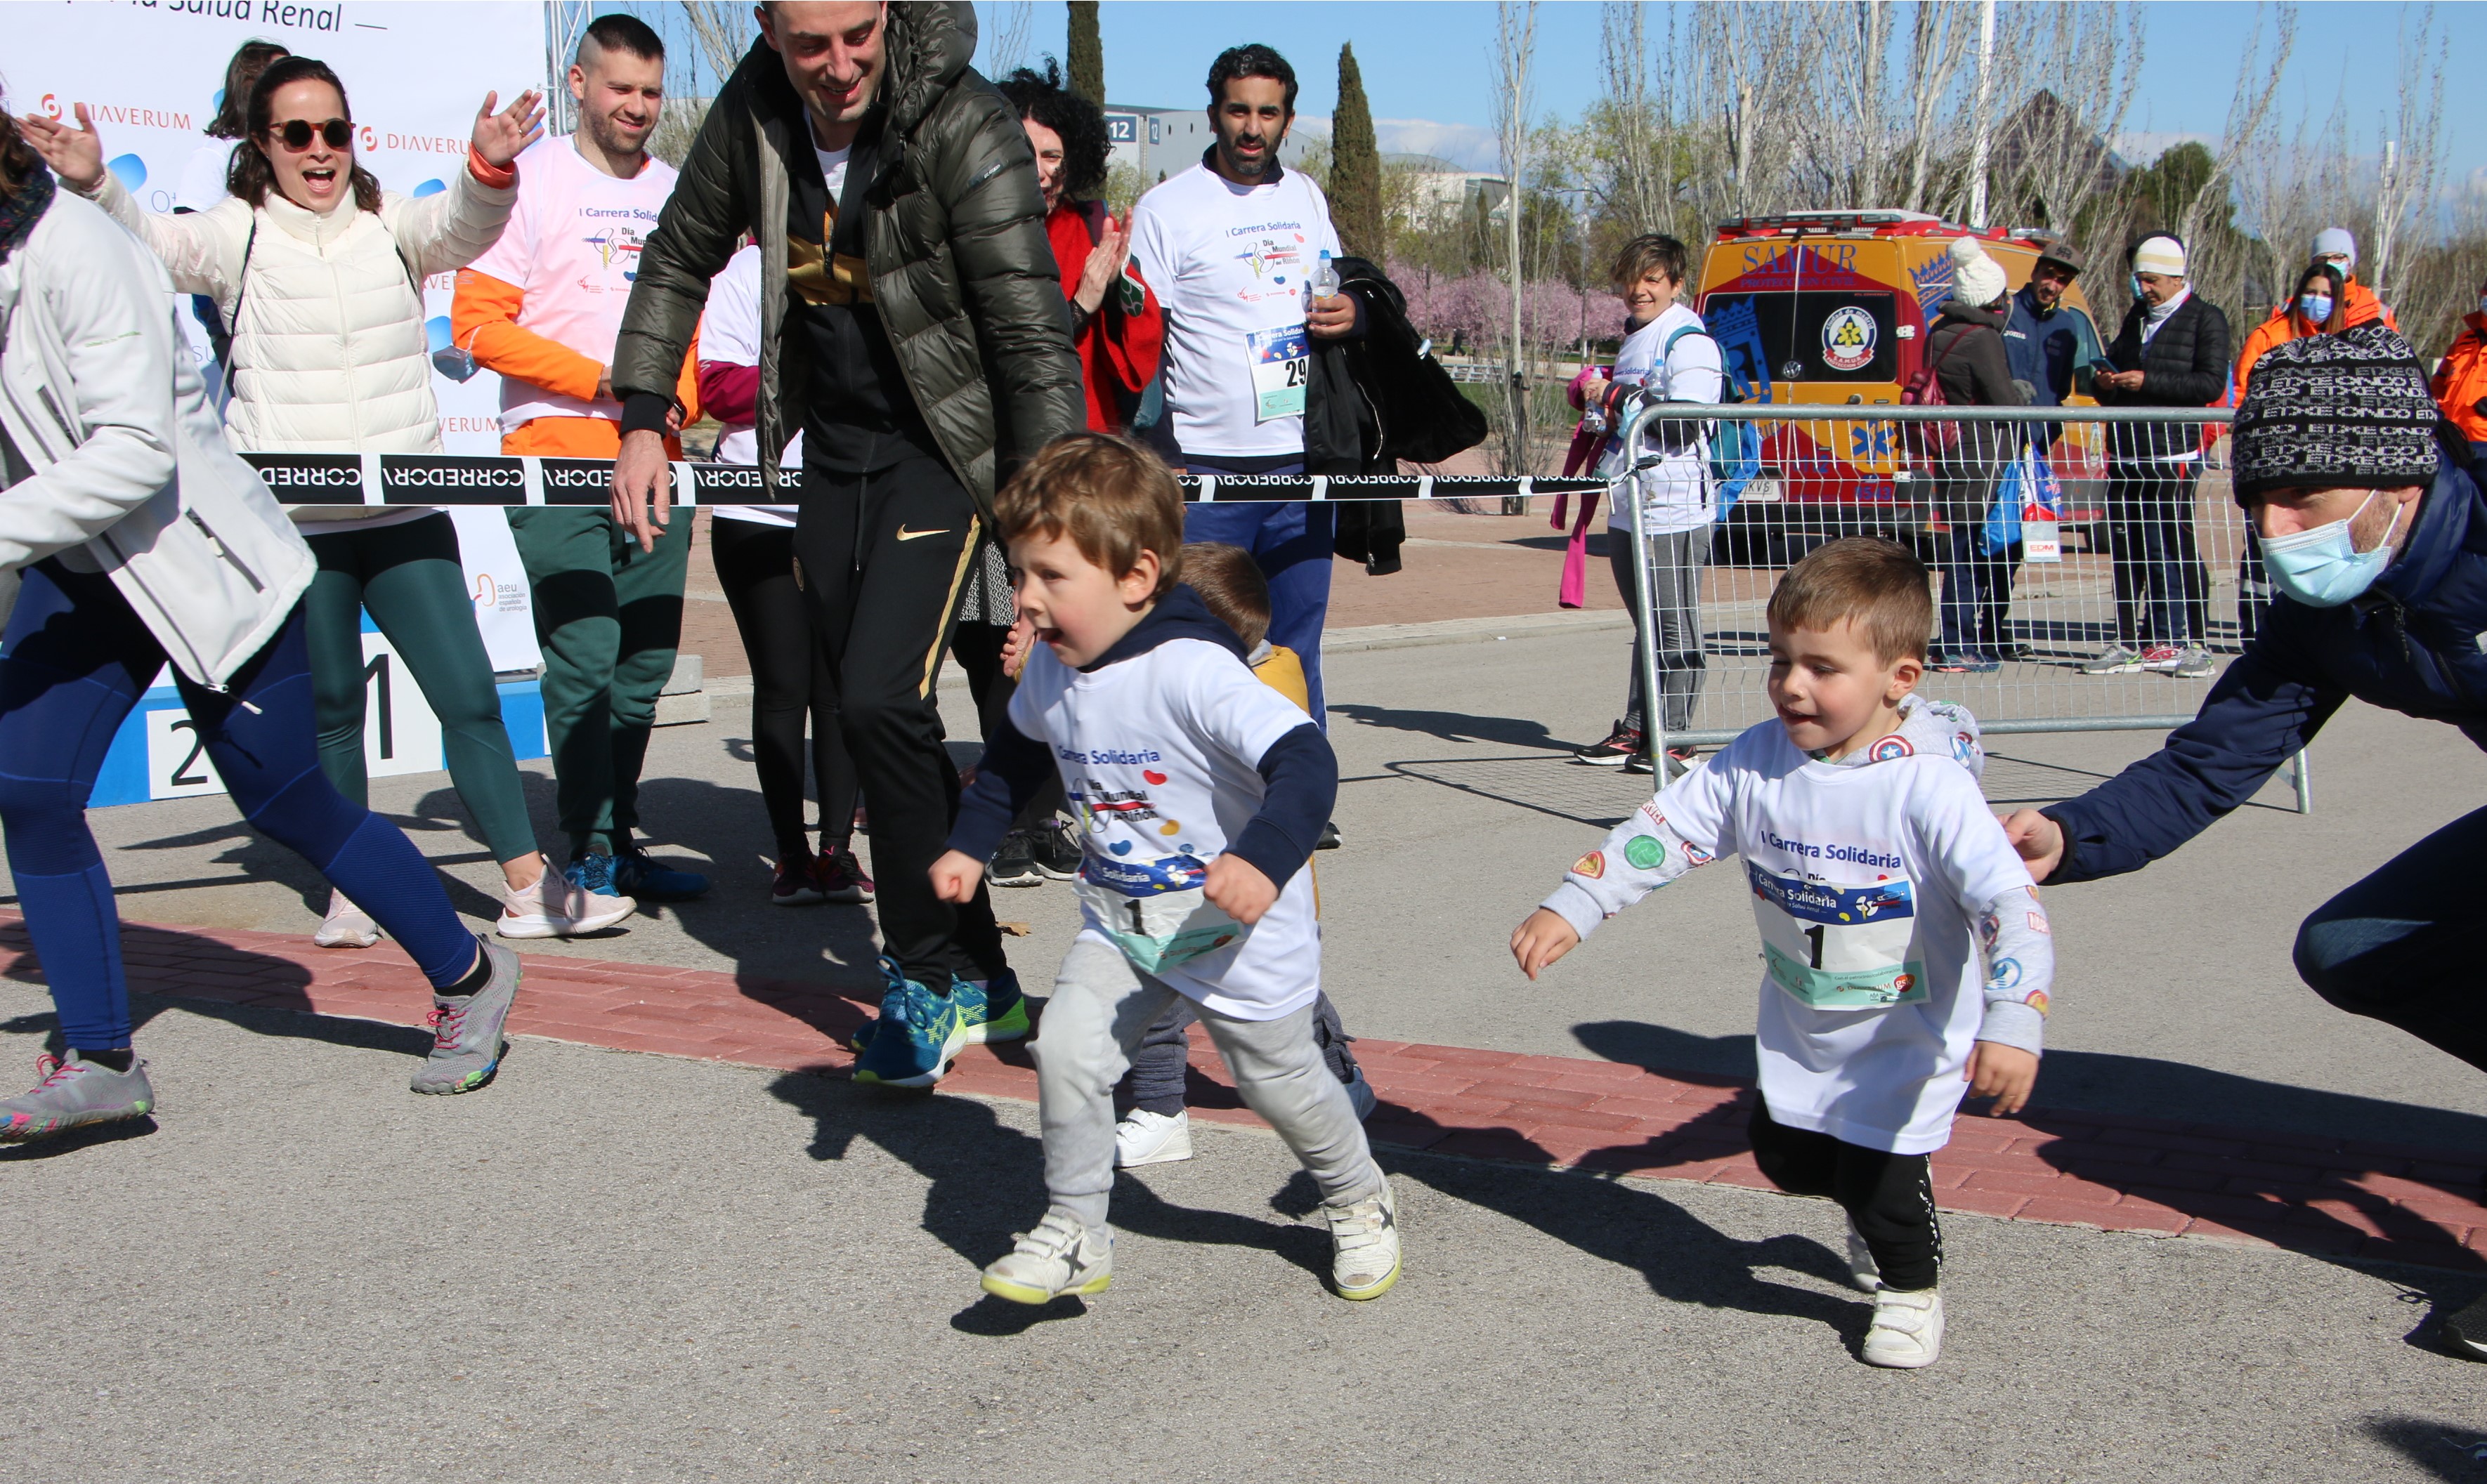 Nota informativa - Unas 400 personas participan en Madrid en la “I Carrera Solidaria por la Salud Renal” con el fin de sensibilizar sobre la enfermedad renal y fomentar el deporte y los hábitos de vida saludable como medida de prevención 